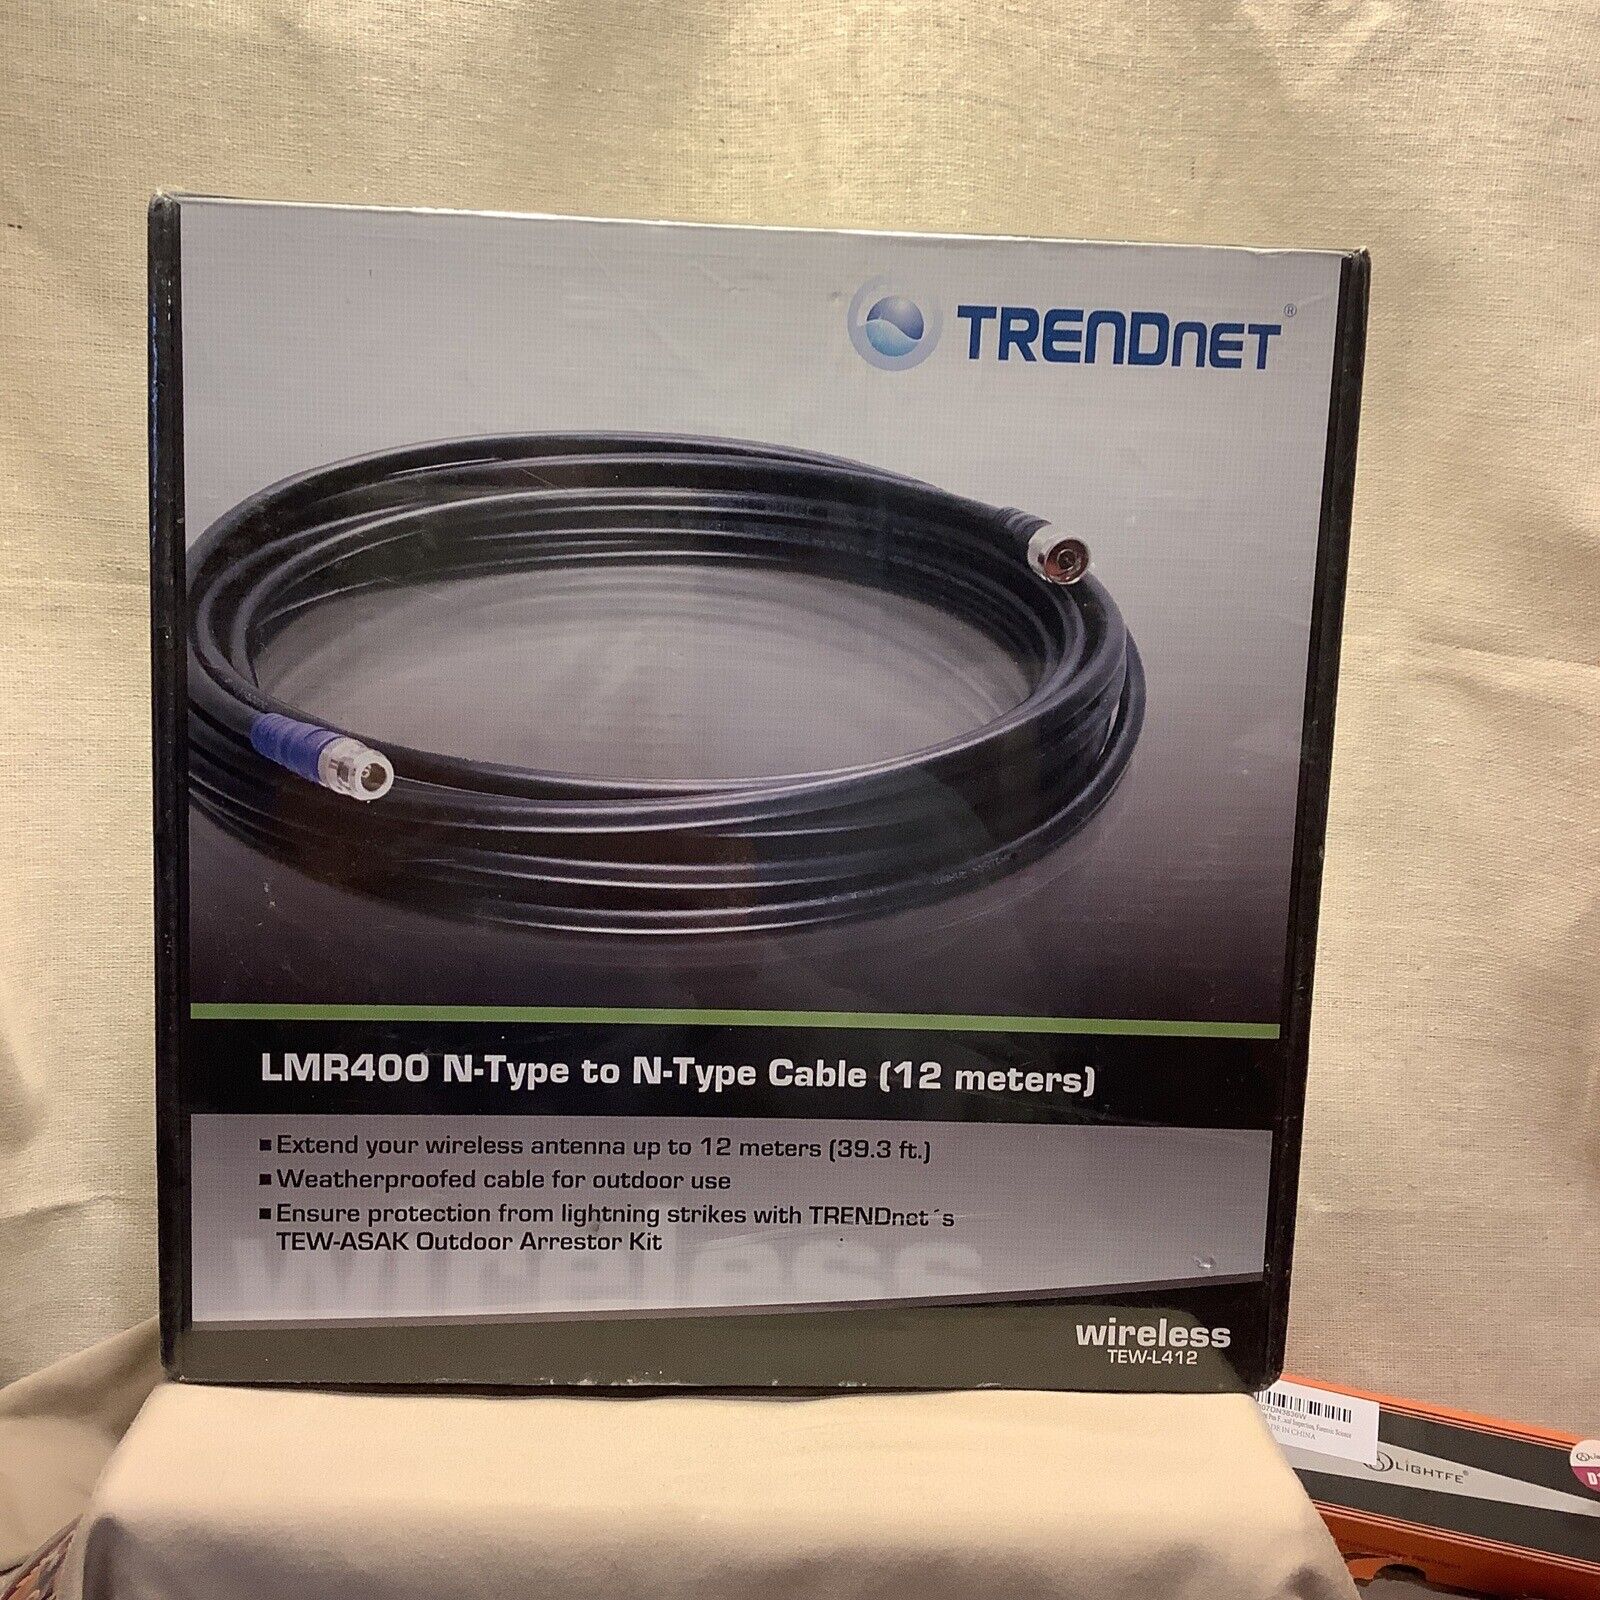 Trendnet LMR400 N-Type to N-Type Cable (12 Meters) 40 Ft